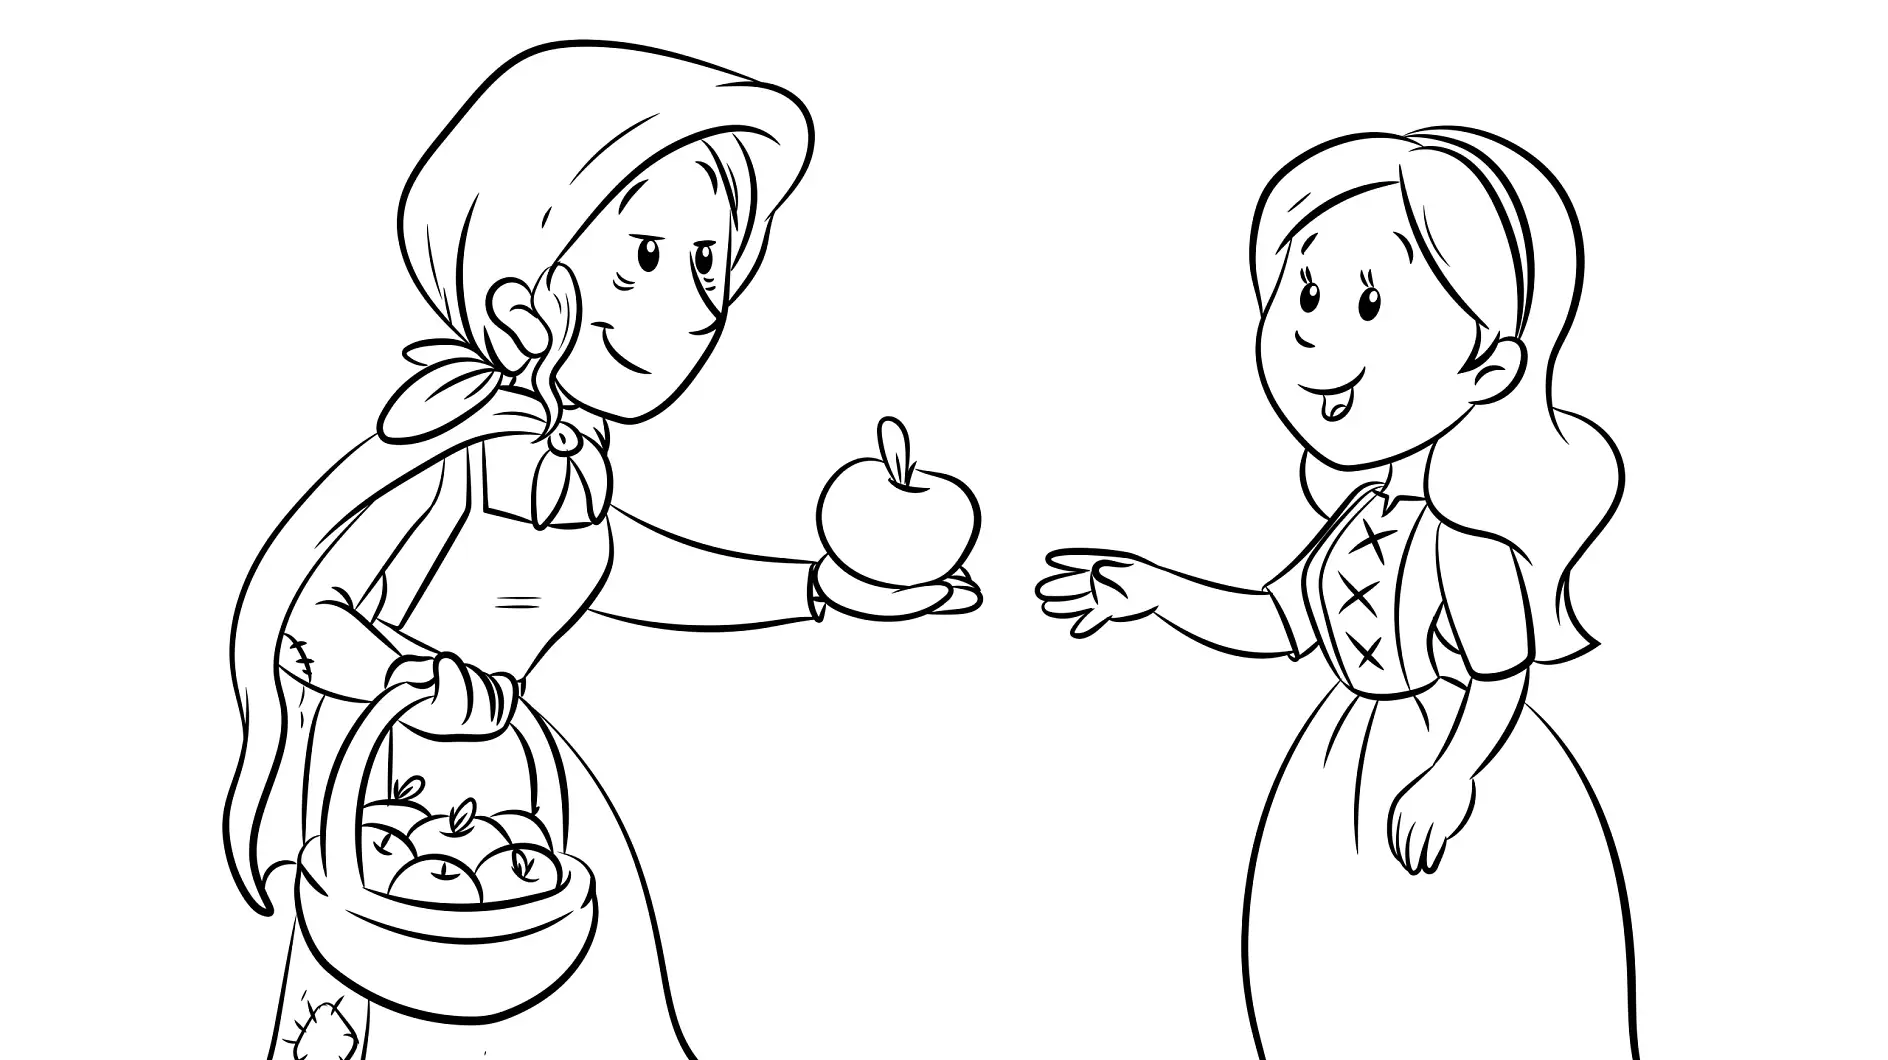 Ausmalbild Schneewittchen nimmt vergifteten Apfel von der Stiefmutter an